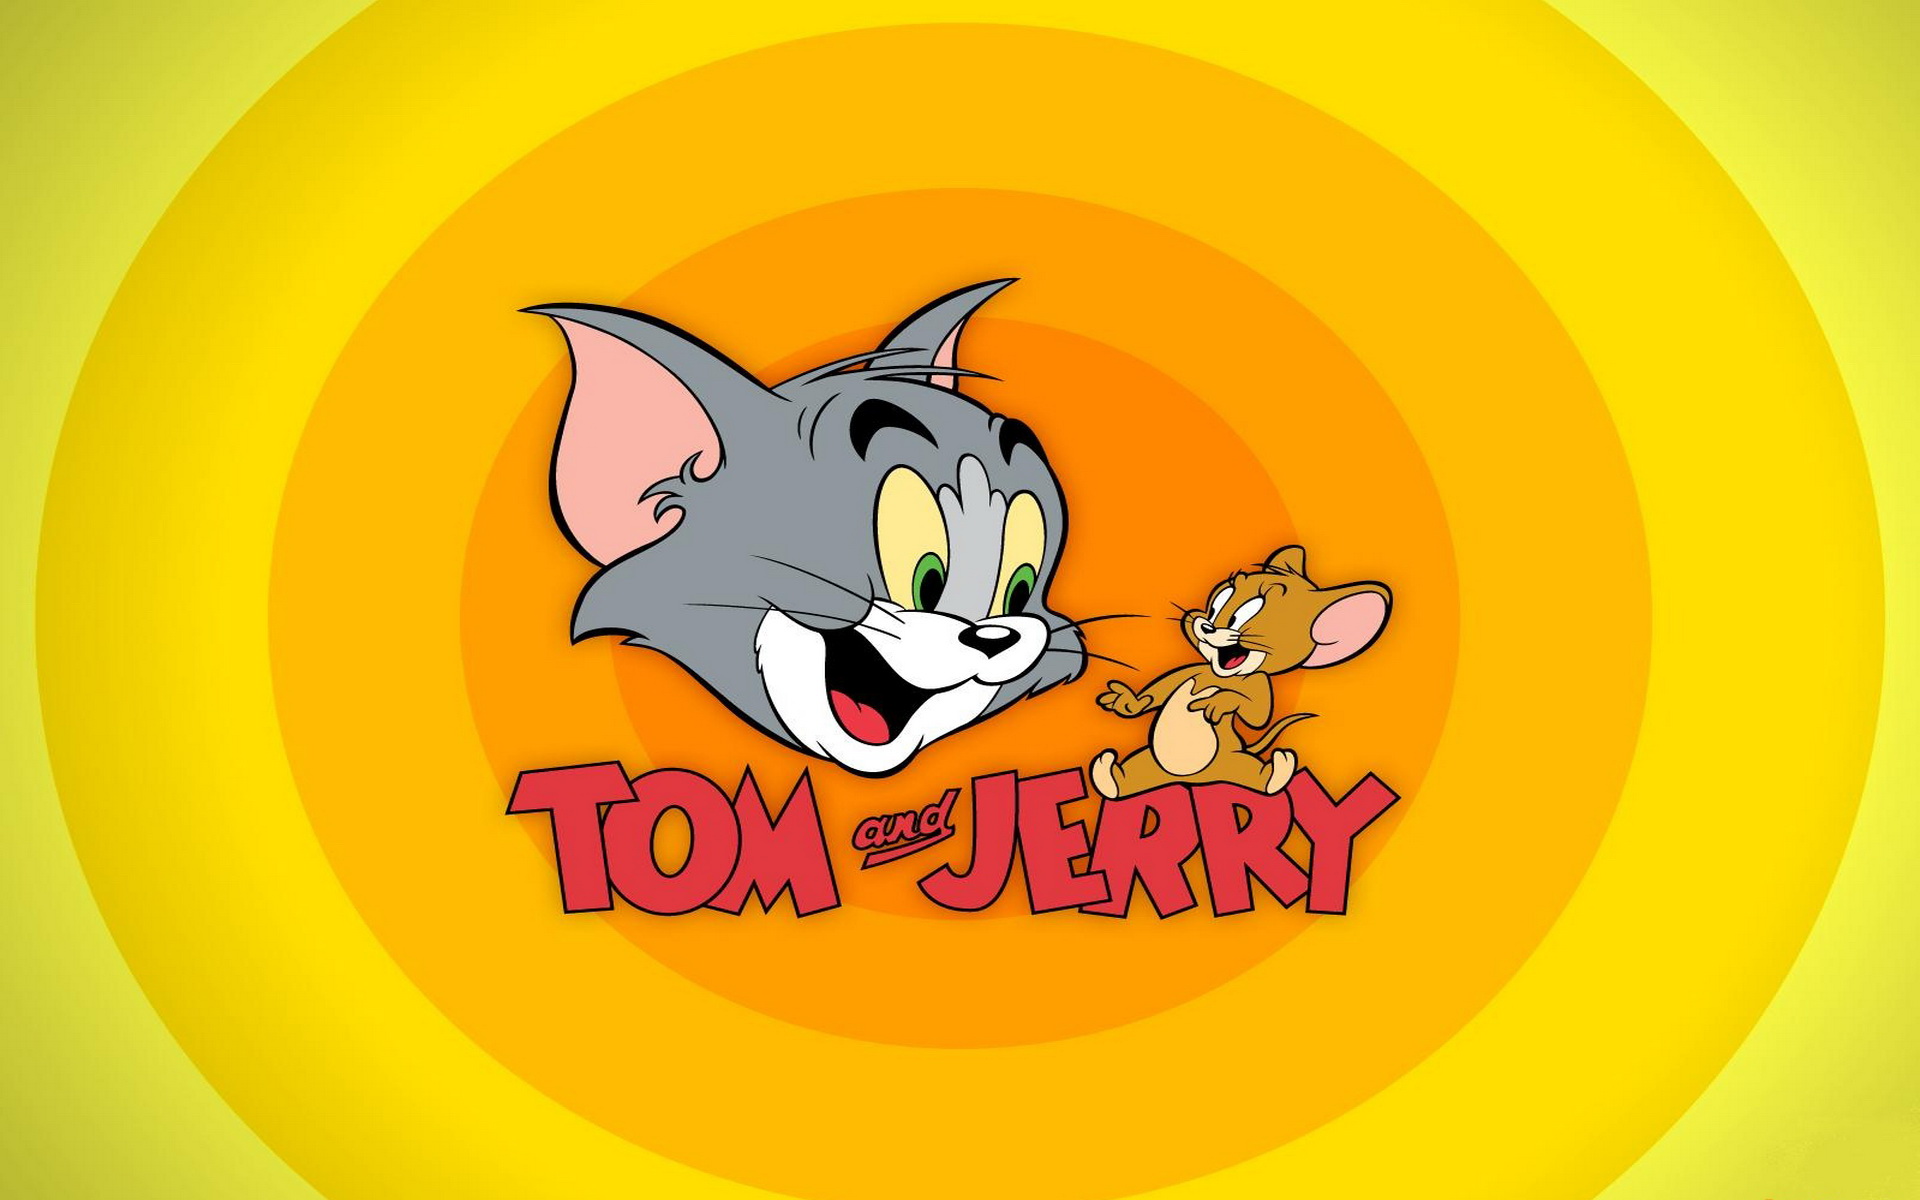 تردد توم وجيري Tom and Jerry على القمر الصناعي نايل سات “ترددات 2020 الجديدة”